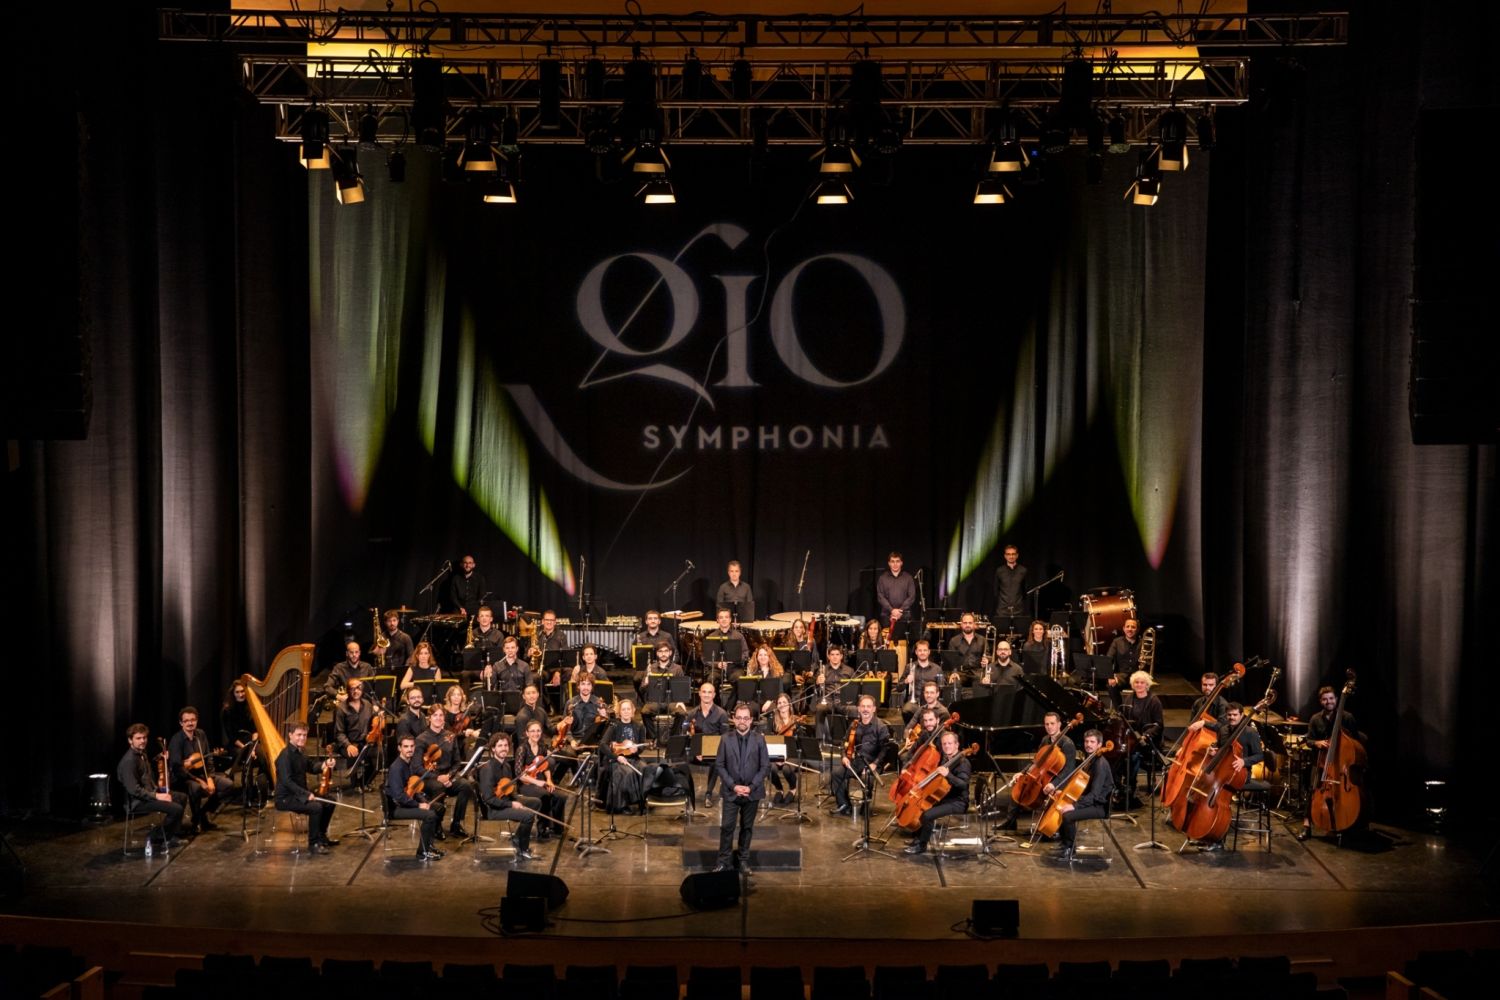 Concert - GIO Symphonia